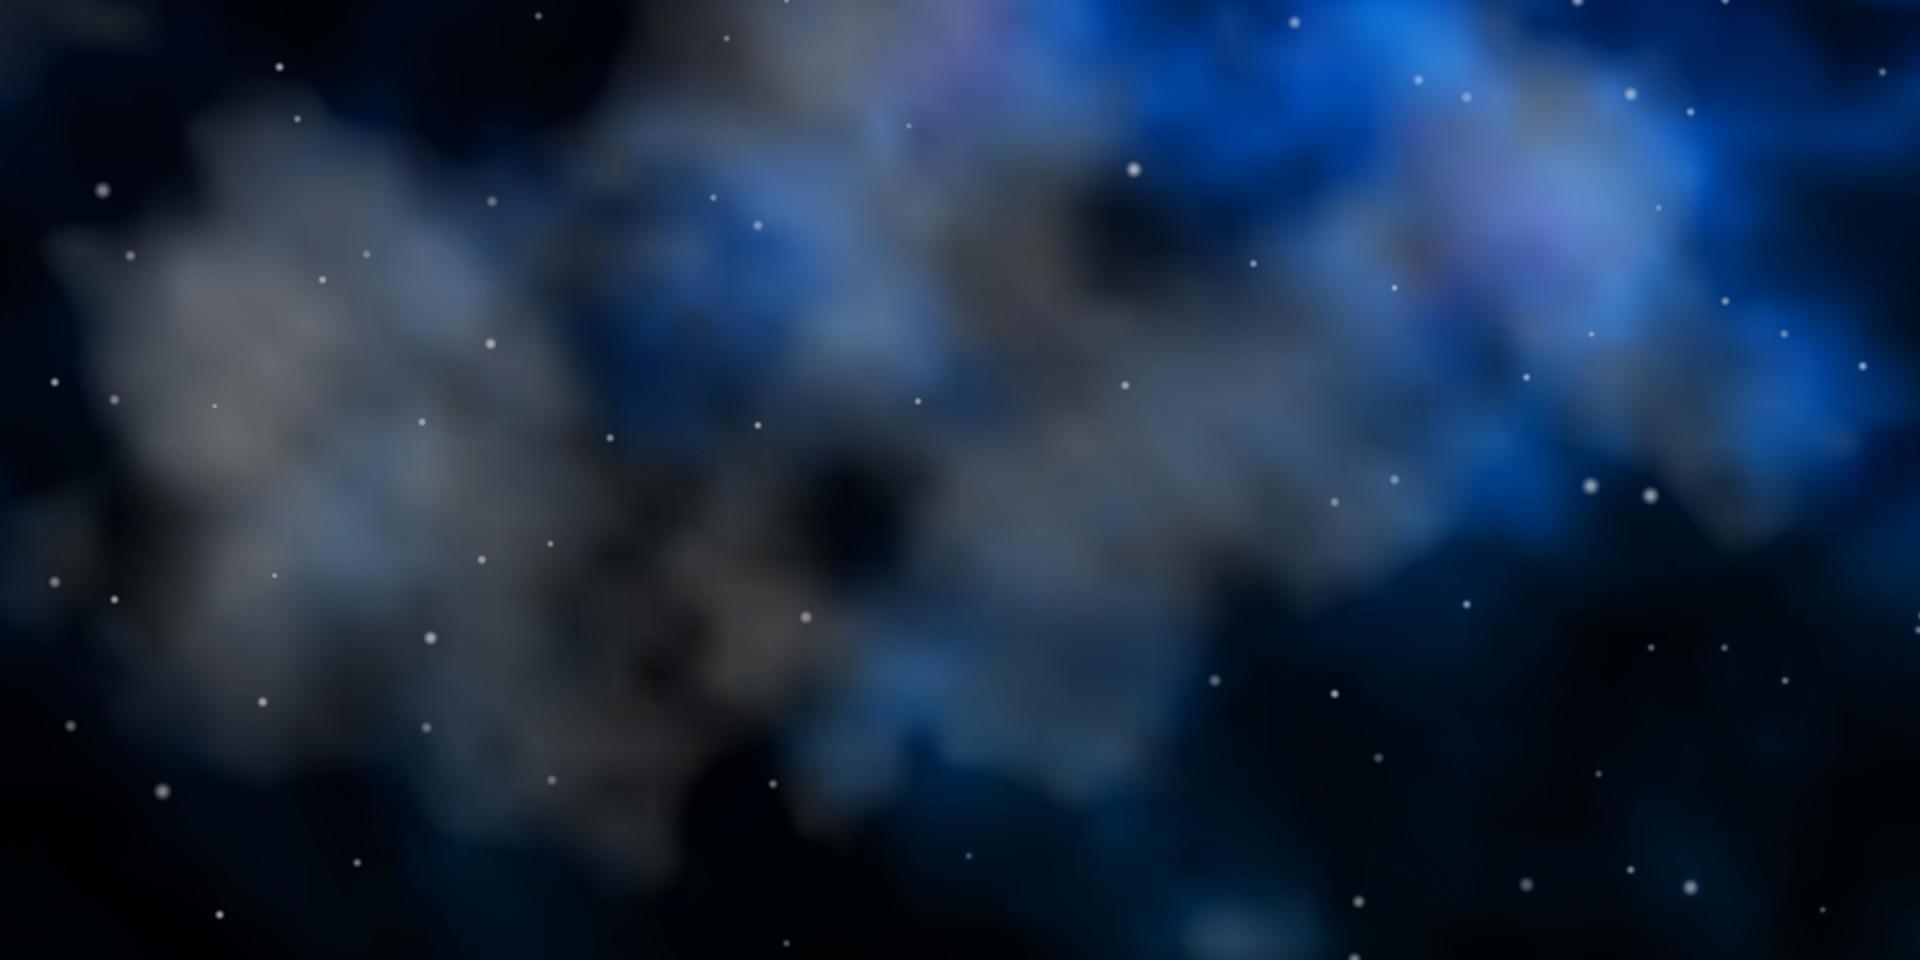 texture de vecteur bleu clair avec de belles étoiles.